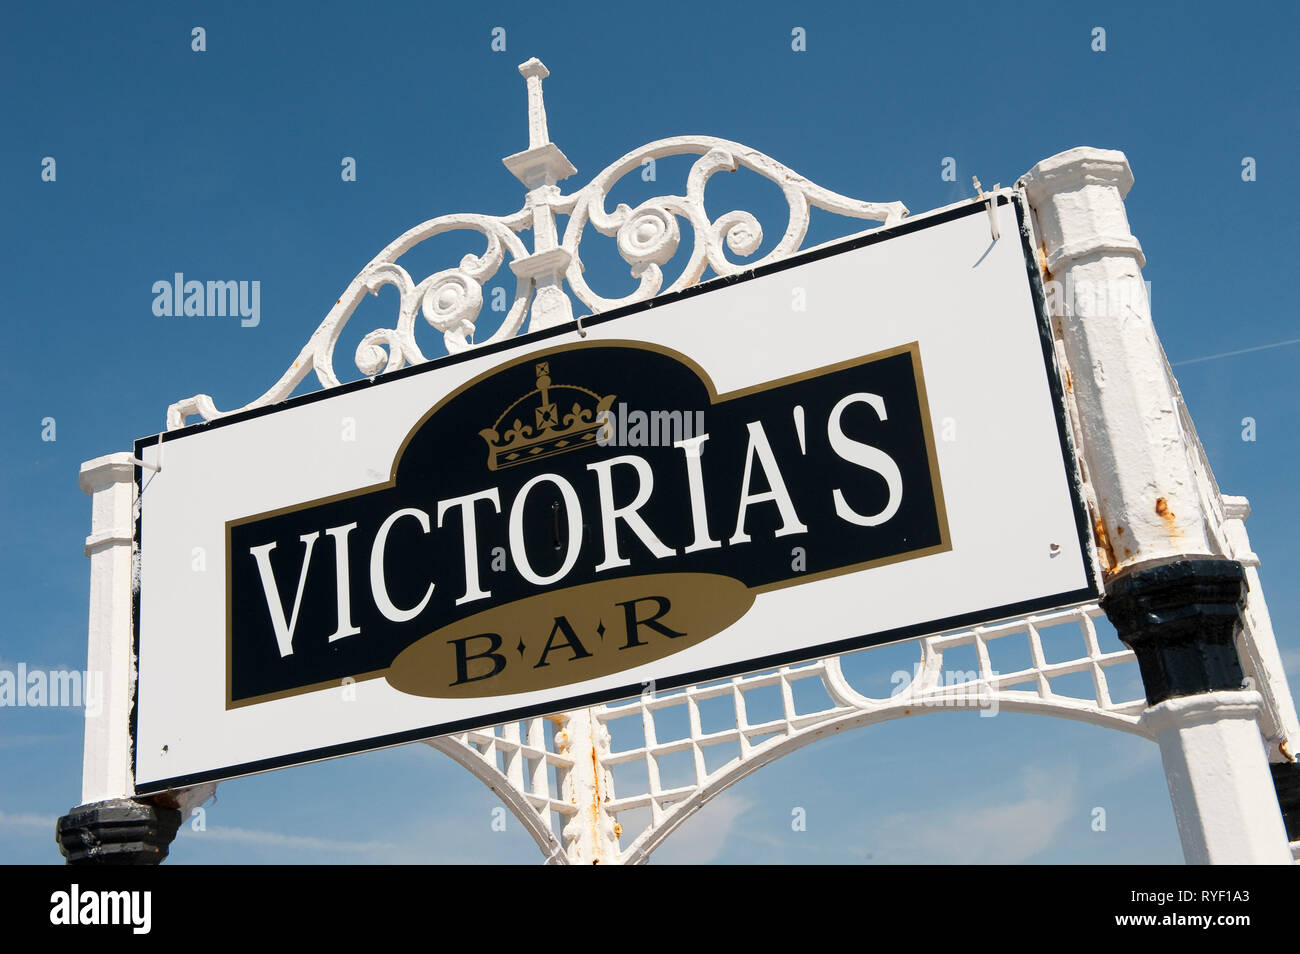 Zeichen für Victorias Bar Palace Pier von Brighton, Brighton, Sussex, England. Stockfoto